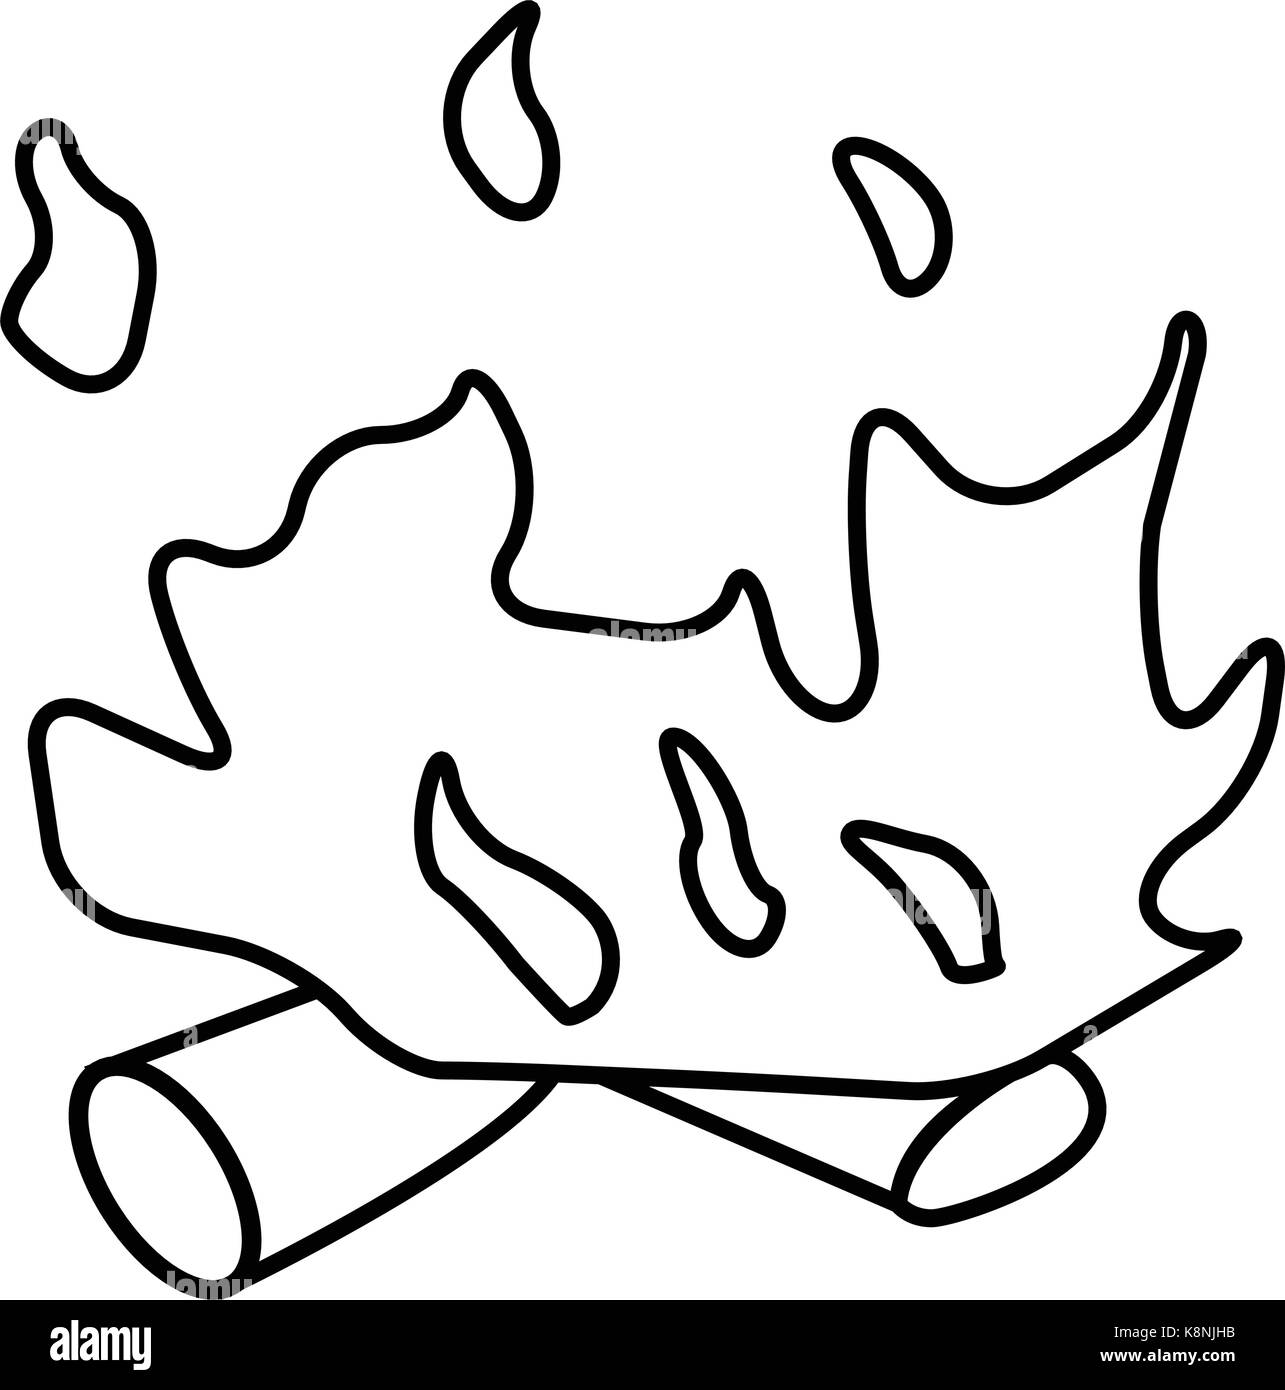 Les grandes lignes de feu, symbole icône concevoir. Vector illustration isolé sur fond blanc. Illustration de Vecteur